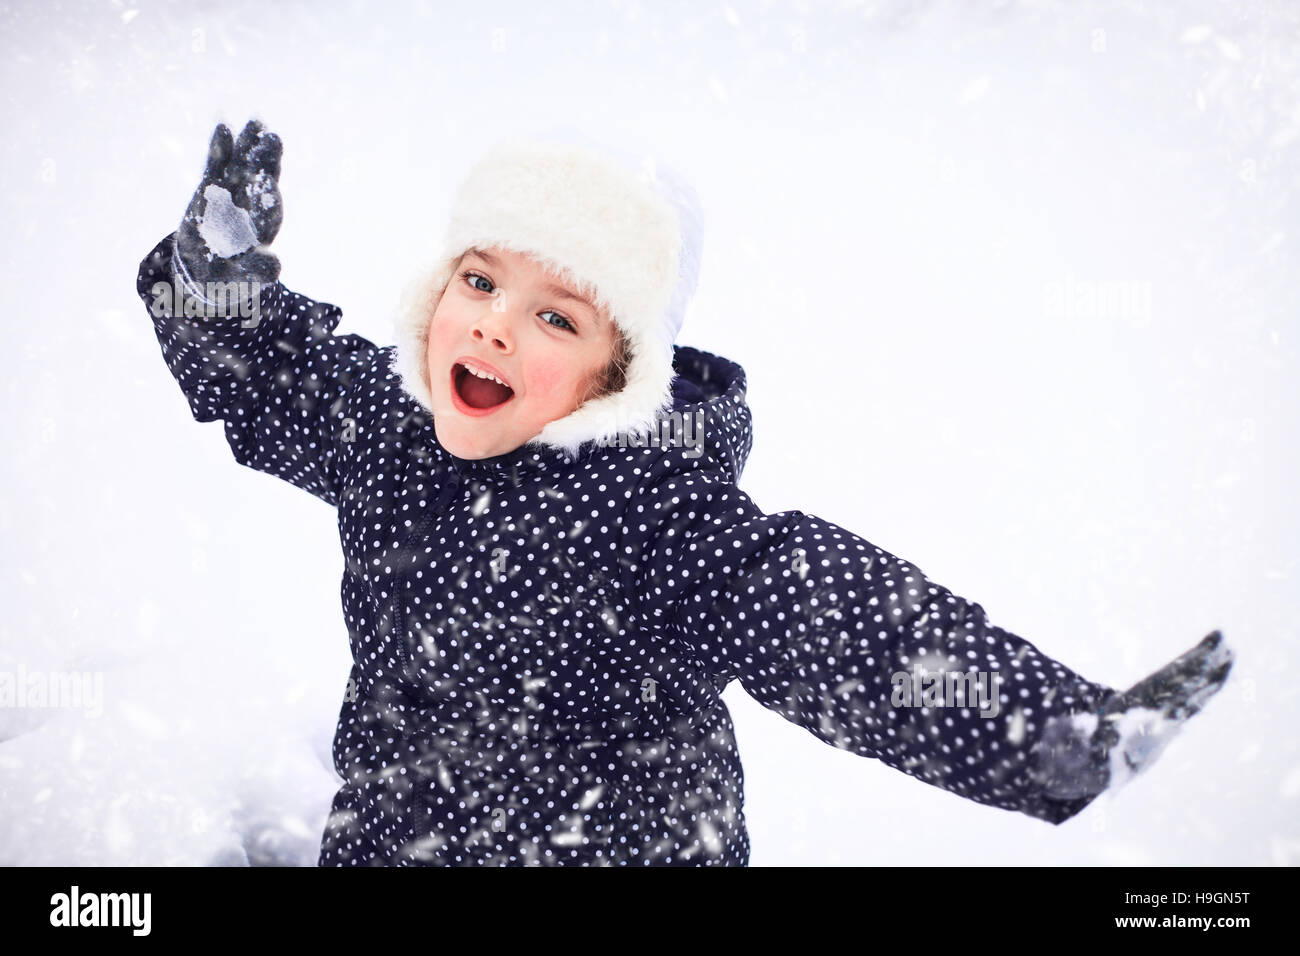 Porträt eines süßen kleinen Mädchens in einem verschneiten Park während eines Schneefalls. Stockfoto